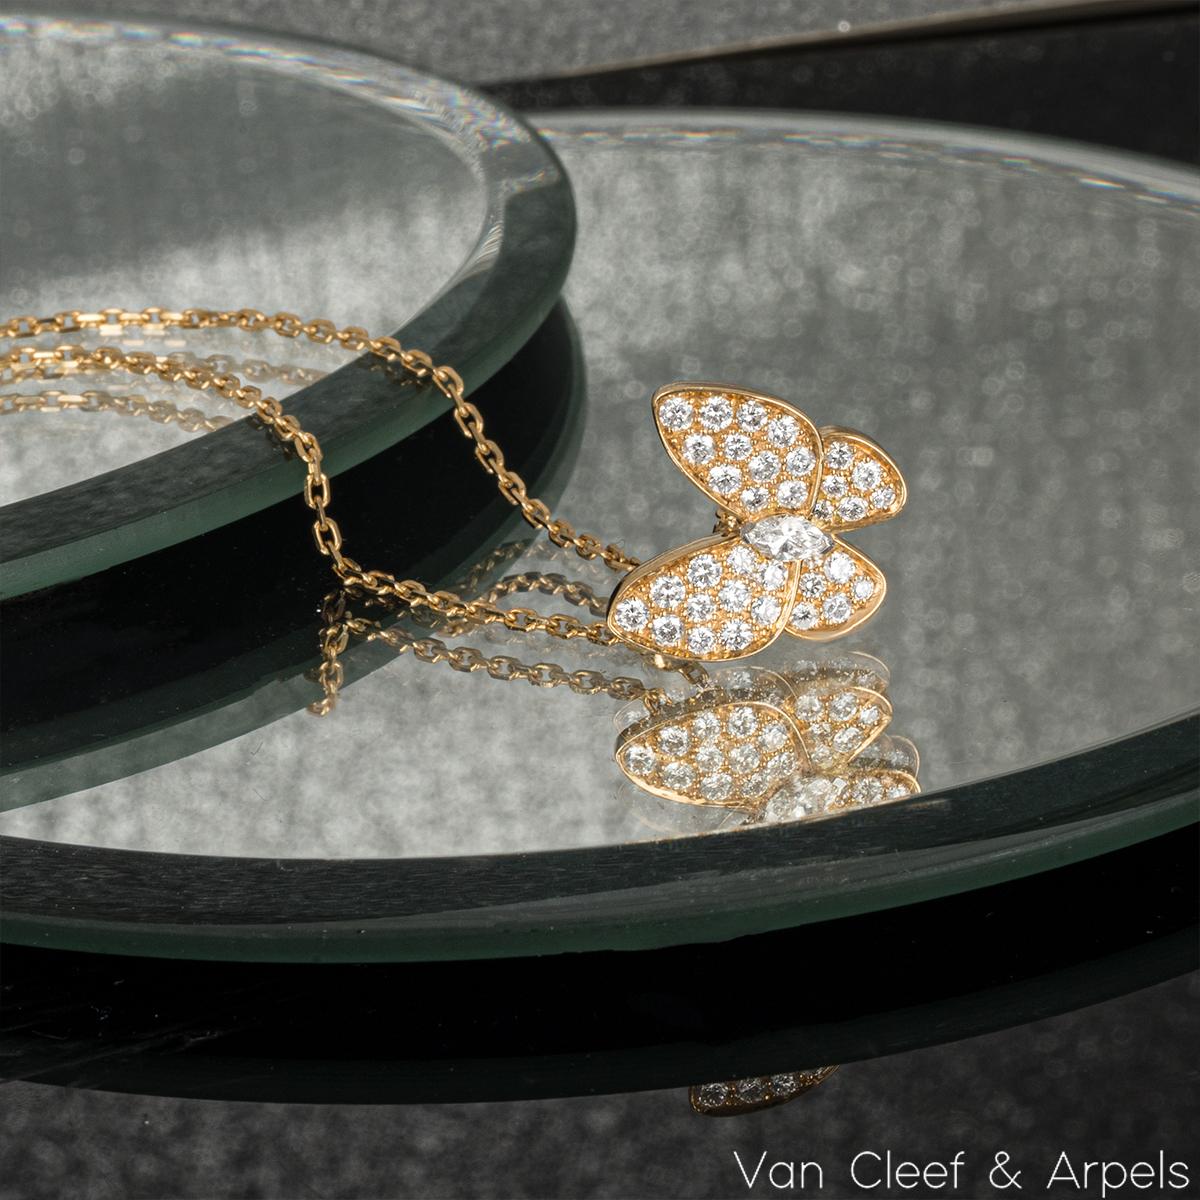  Van Cleef & Arpels Pendentif deux papillons en or jaune et diamants VCARP3DP00 Pour femmes 